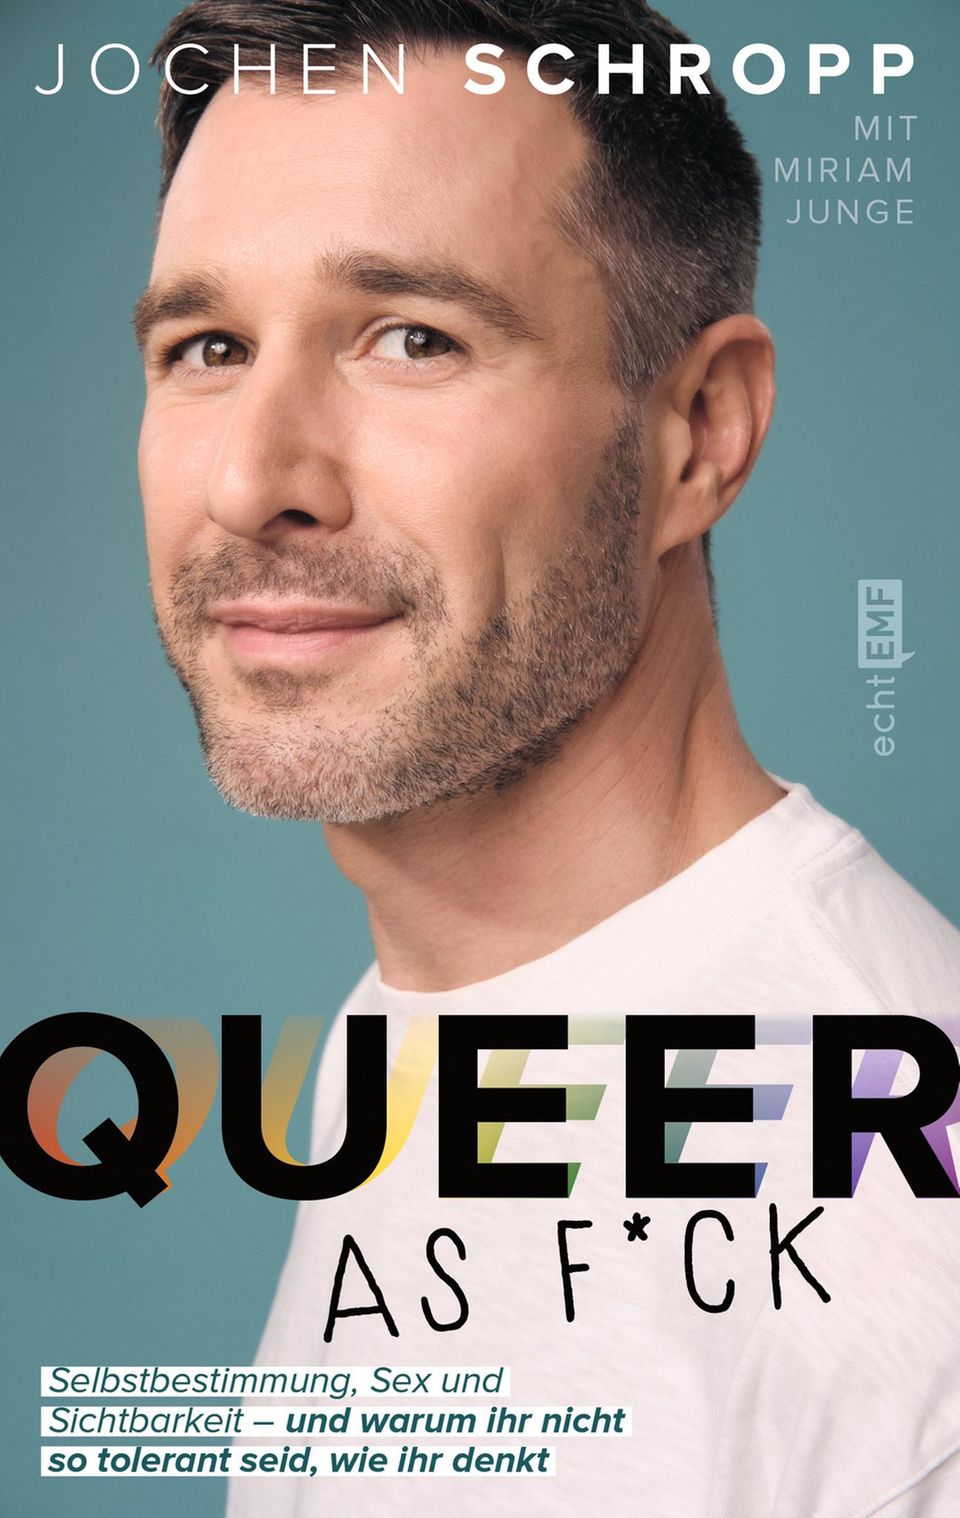 Jochen Schropps Buch "Queer as f*ck: Selbstbestimmung, Sex und Sichtbarkeit – und warum ihr nicht so tolerant seid, wie ihr denkt" ist am 10. Mai 2022 im EMF-Verlag erschienen.